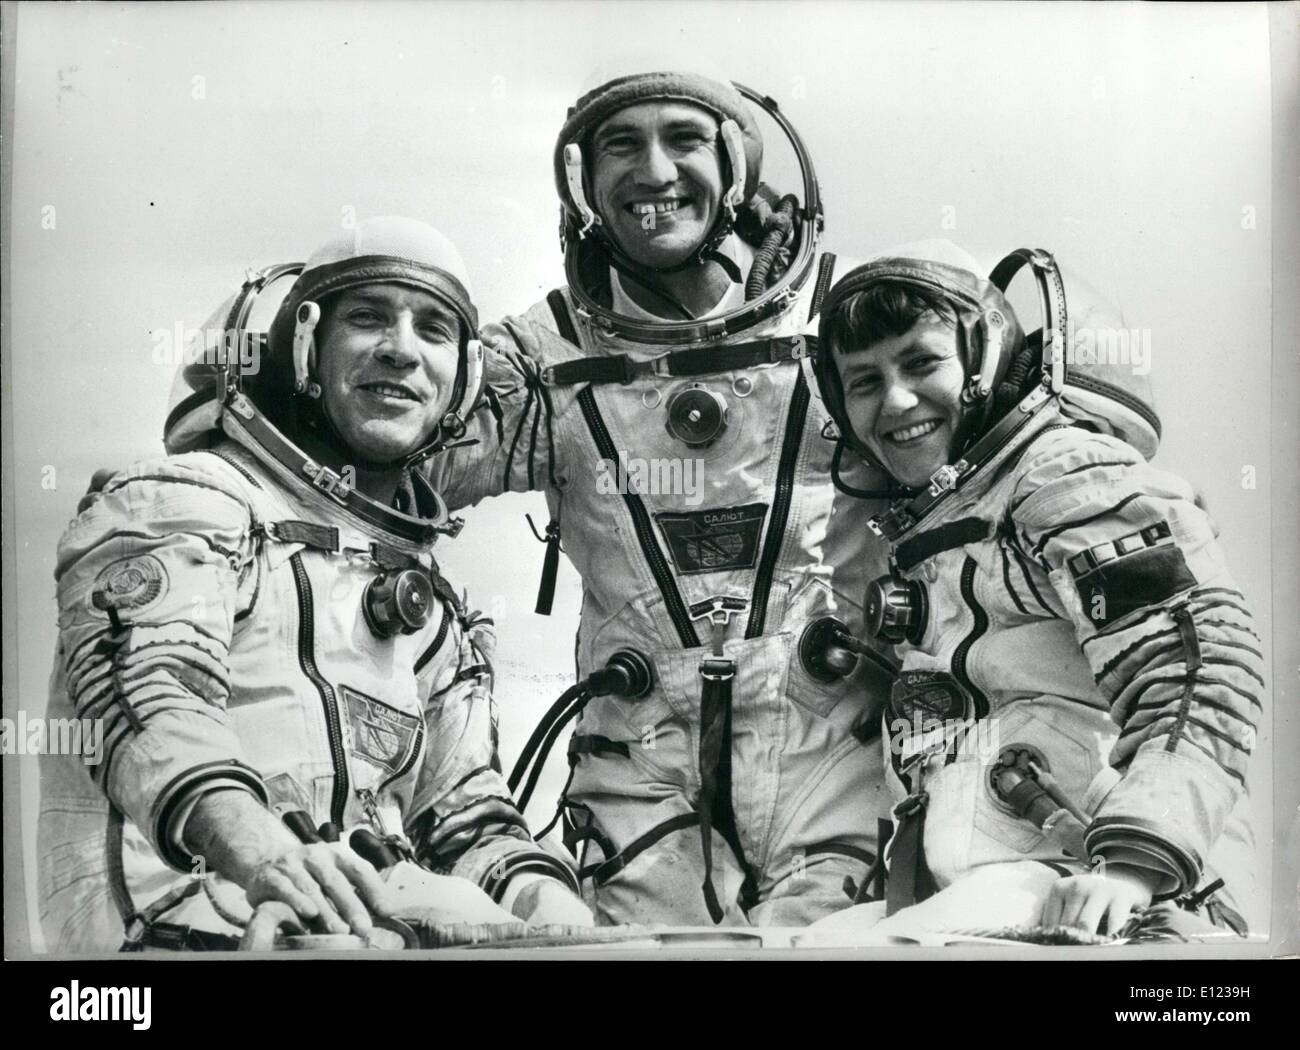 23 août 1982 - Depuis qu'un homme marchait sur la lune, aucune femme n'a été là. Pour la première fois, une femme va aller sur la lune. Son nom est AA Serevrov et elle sera accompagnée par le commandant LI Popov et SY Savitskaya, un chercheur. Banque D'Images